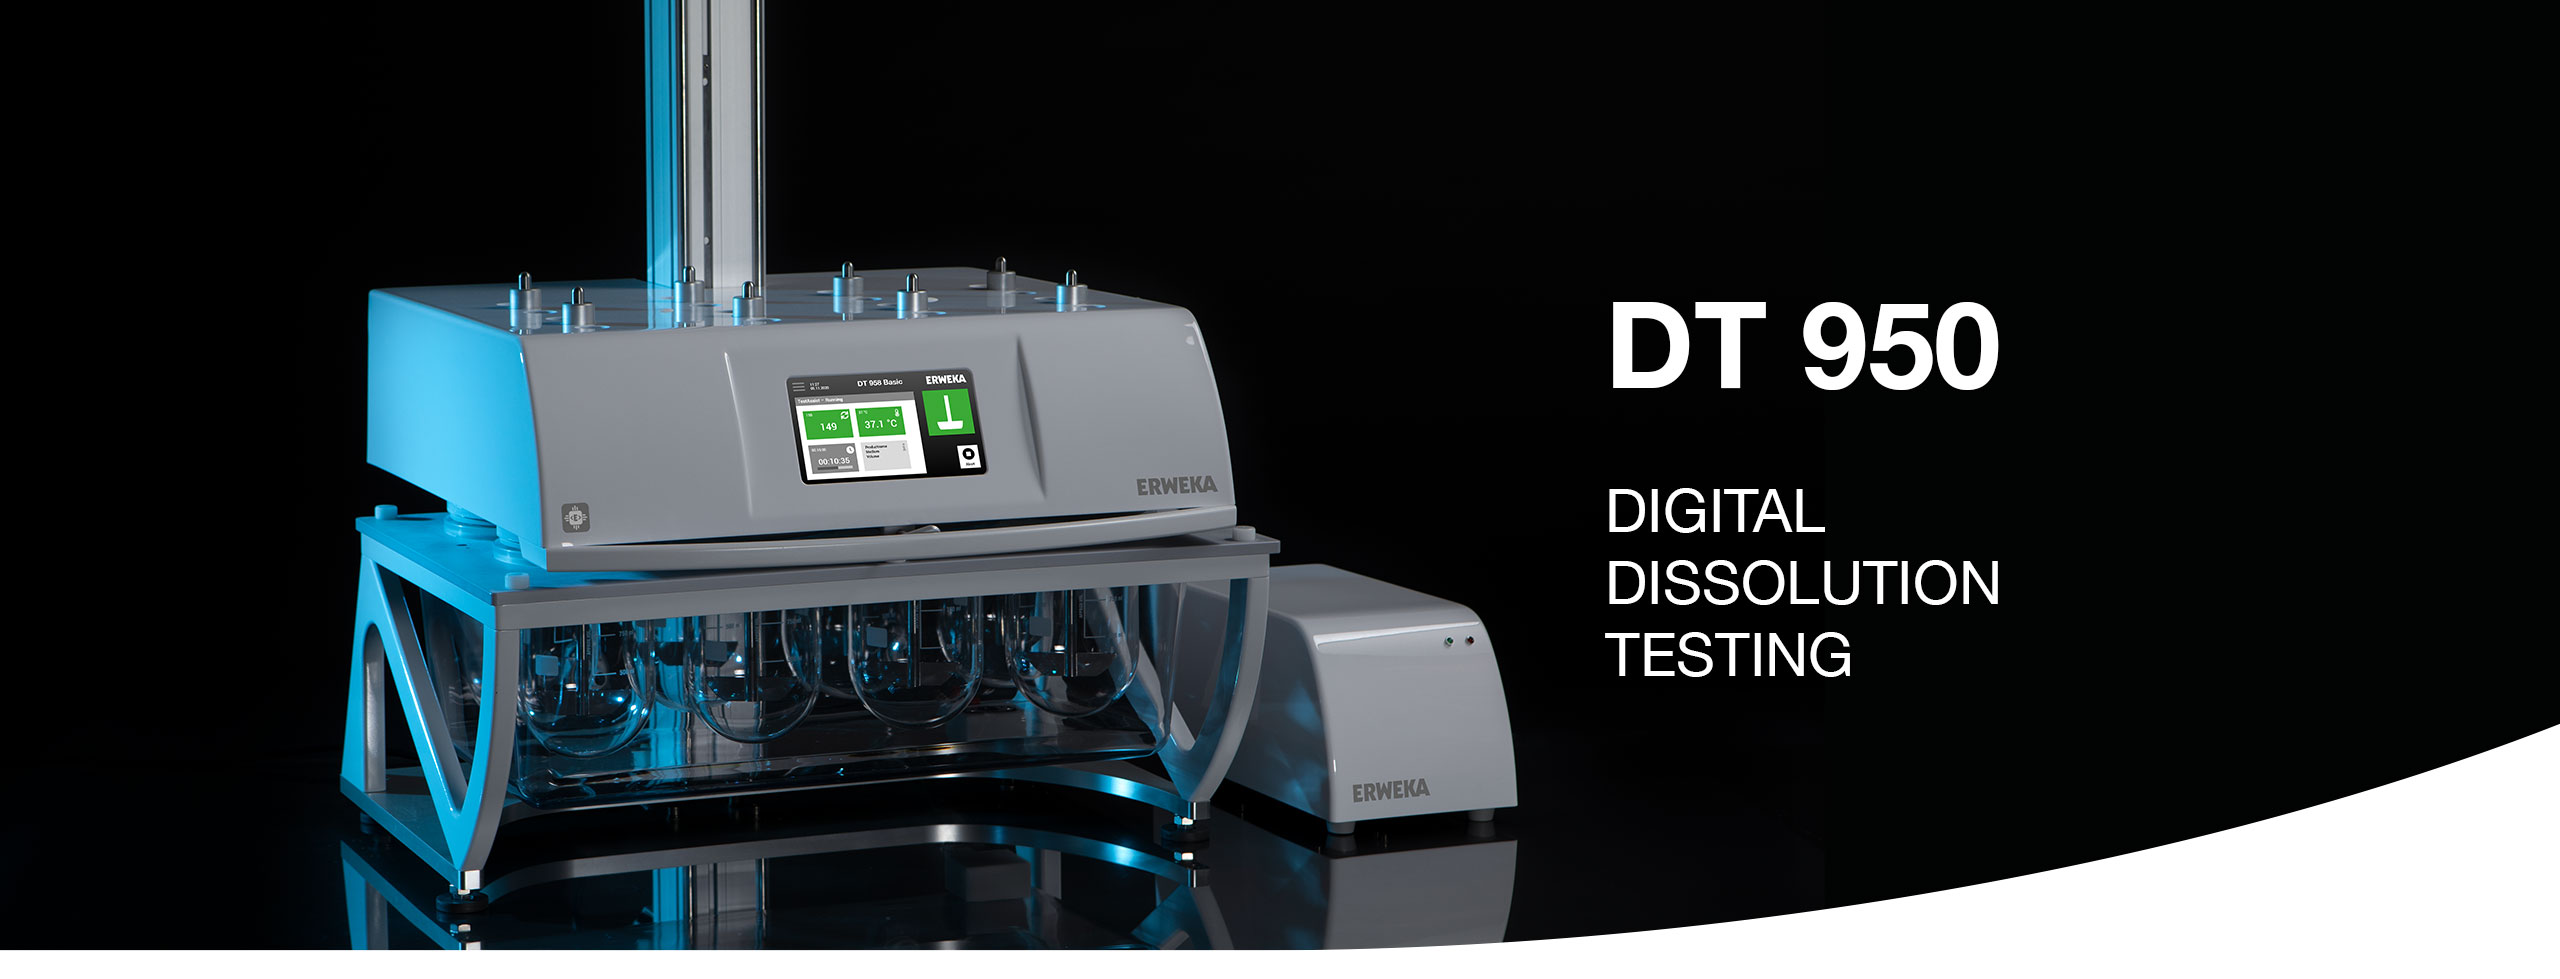 der neue digitale DT 950